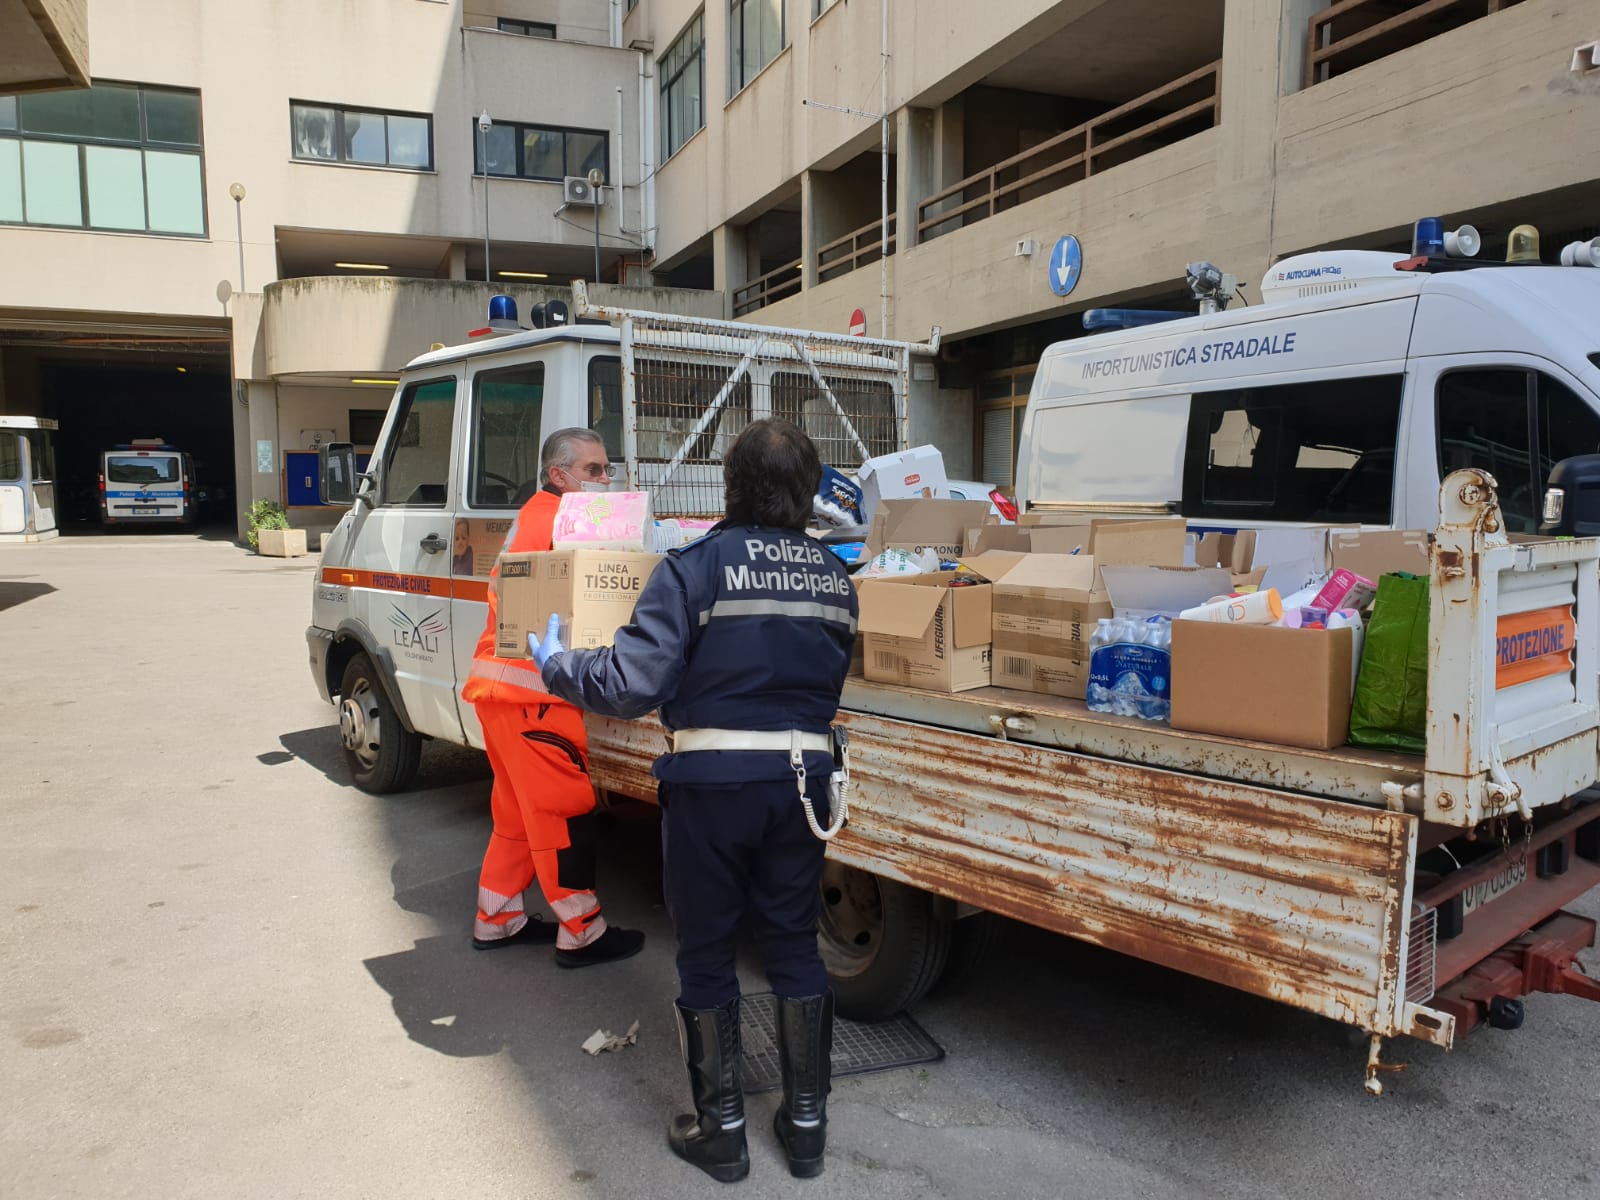 SolidarietÃ . Agenti e personale polizia municipale raccolgono beni di prima necessitÃ 